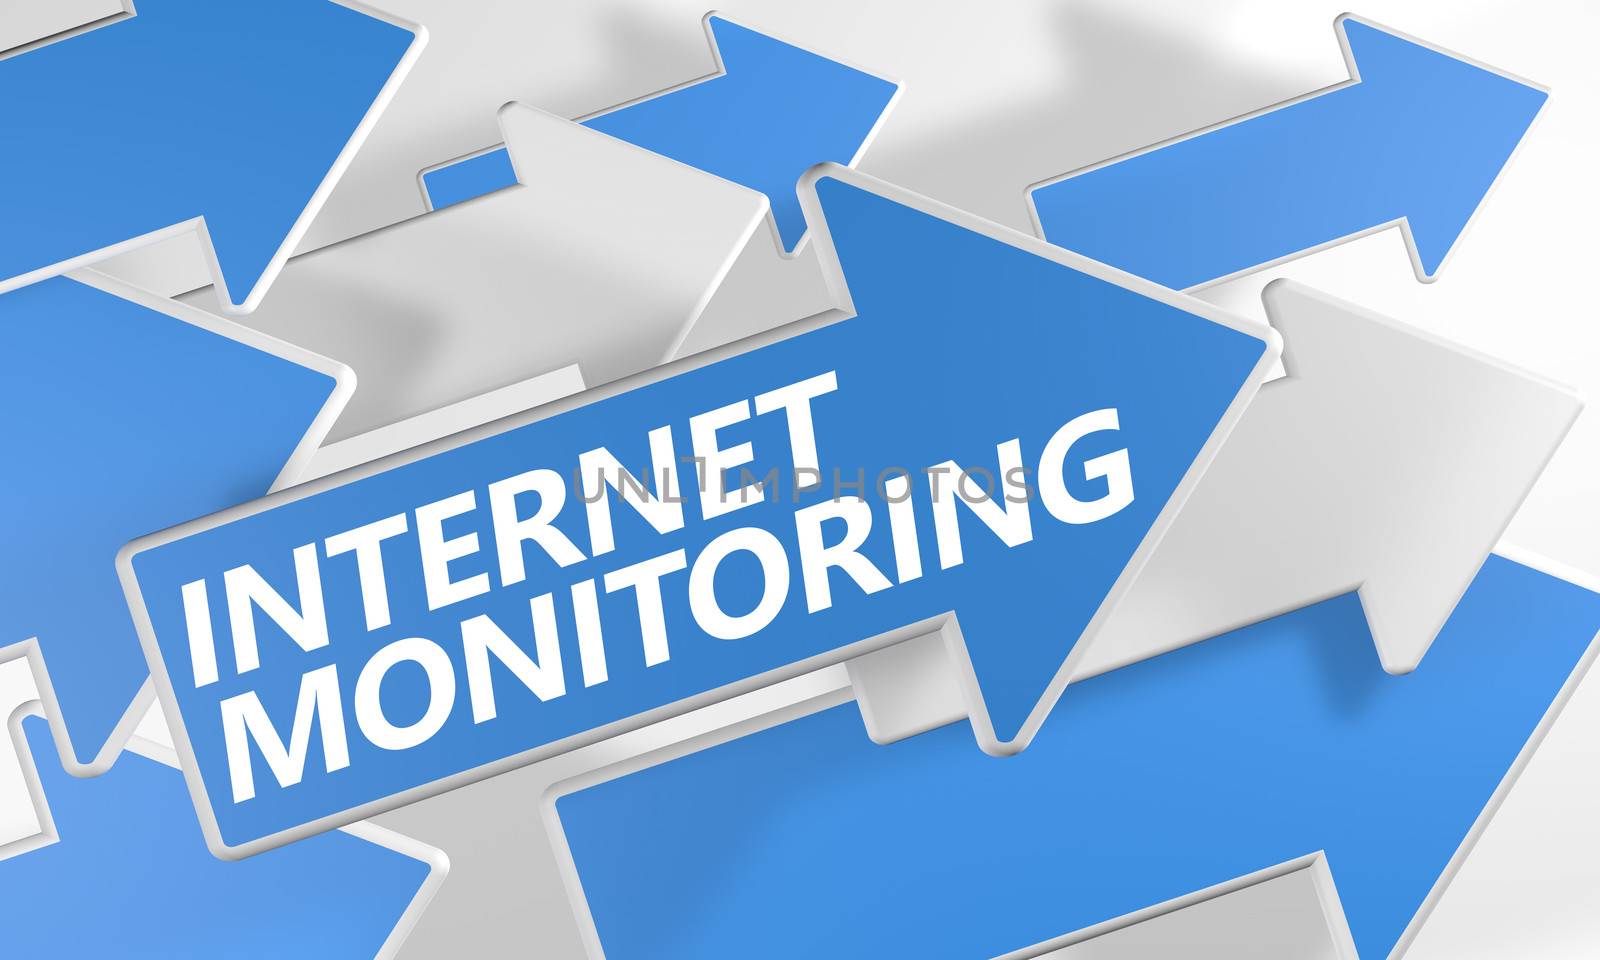 Internet Monitoring by Mazirama